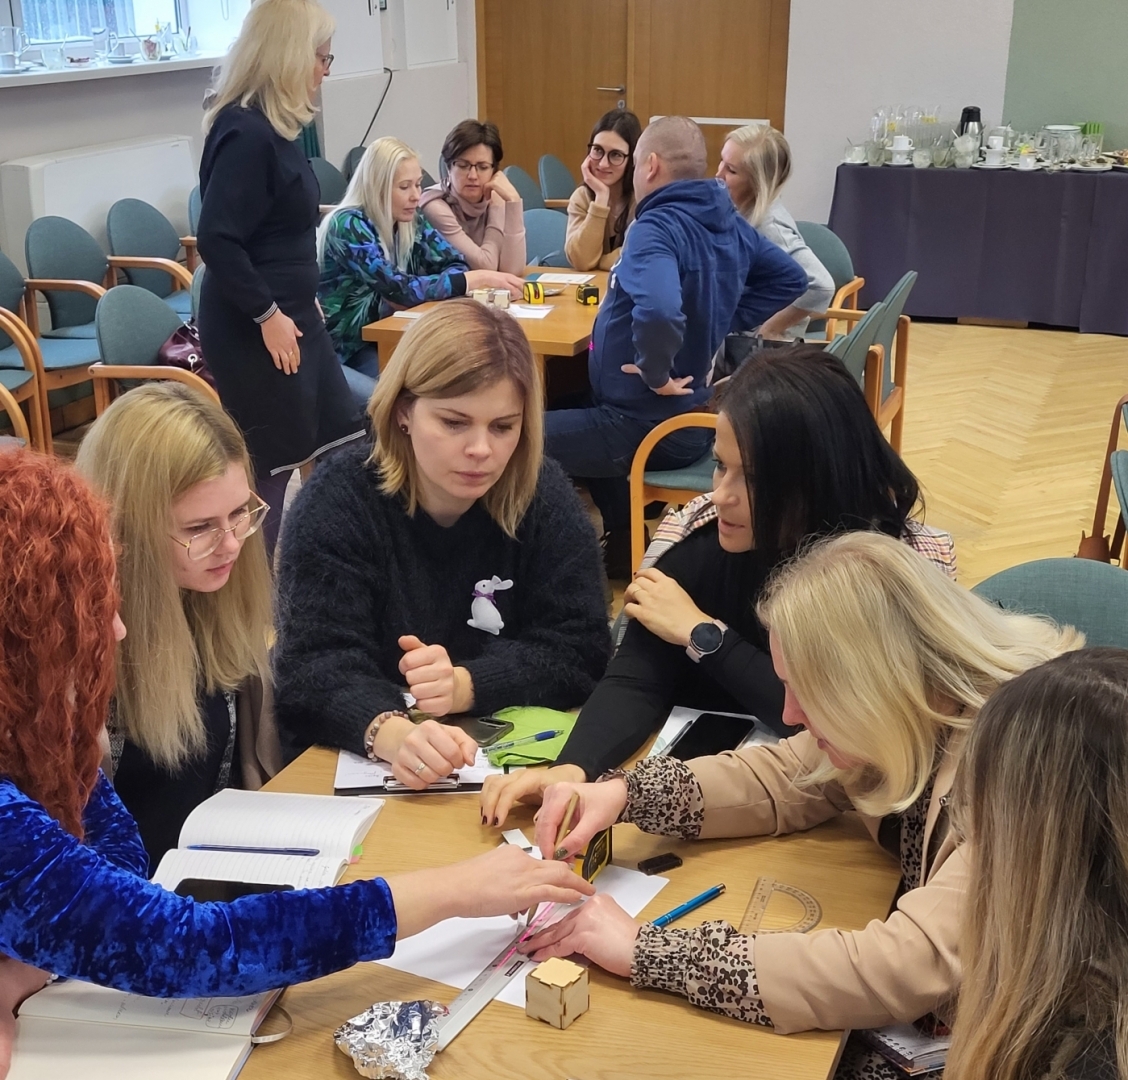 Jelgavas novada pašvaldības skolu pedagogi kopā ar kolēģiem no Jelgavas Valsts ģimnāzijas apgūst zināšanas par STEAM